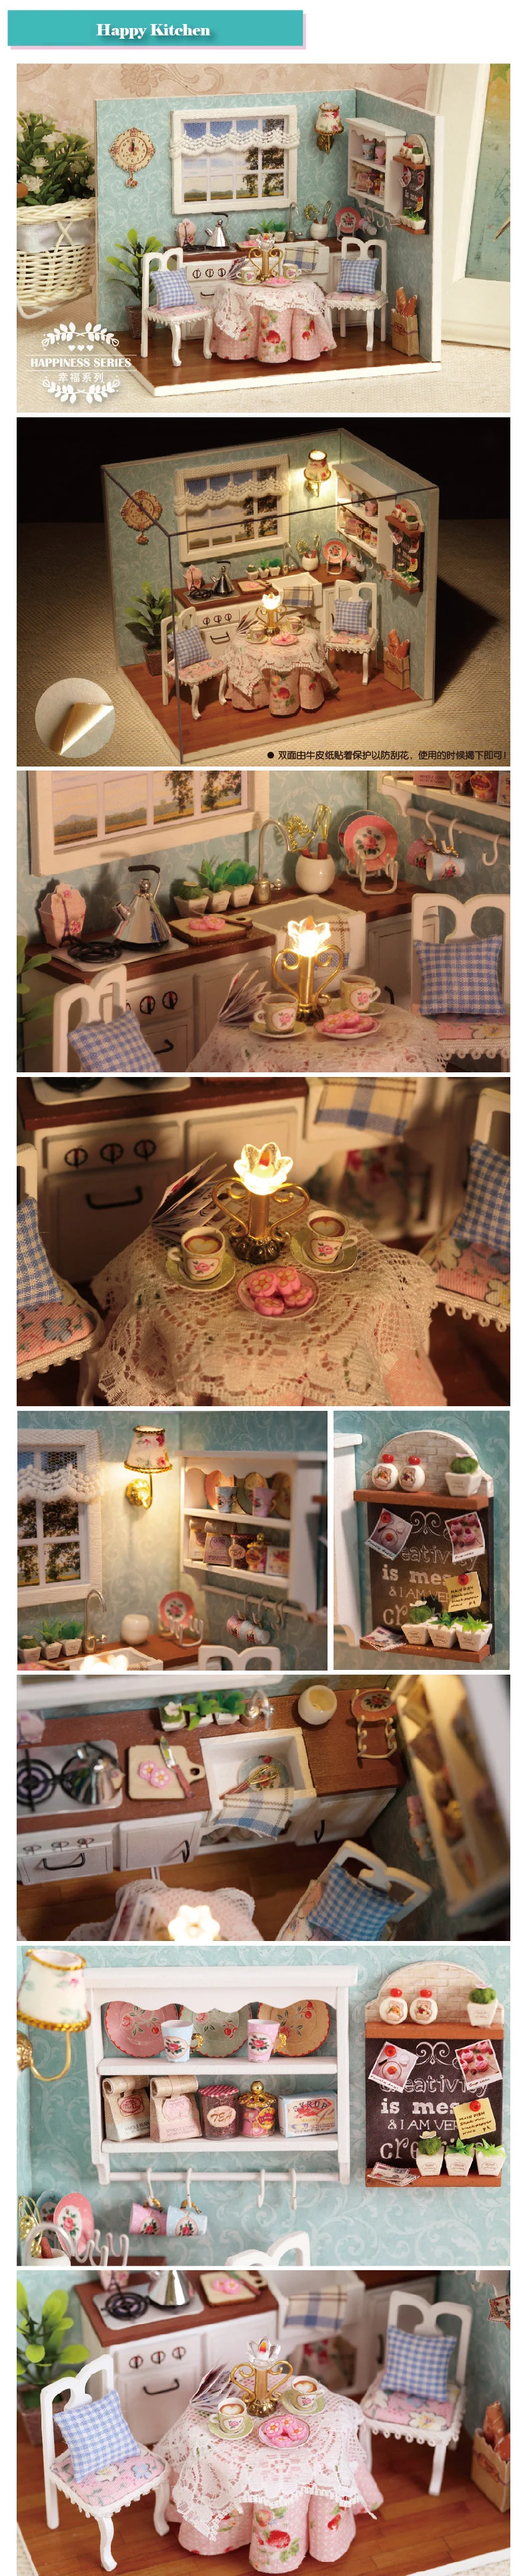 4 стиля ручной работы креативный DIY Домик счастливая кухня playmobil хобби модели строительные наборы игрушки для детей Рождество